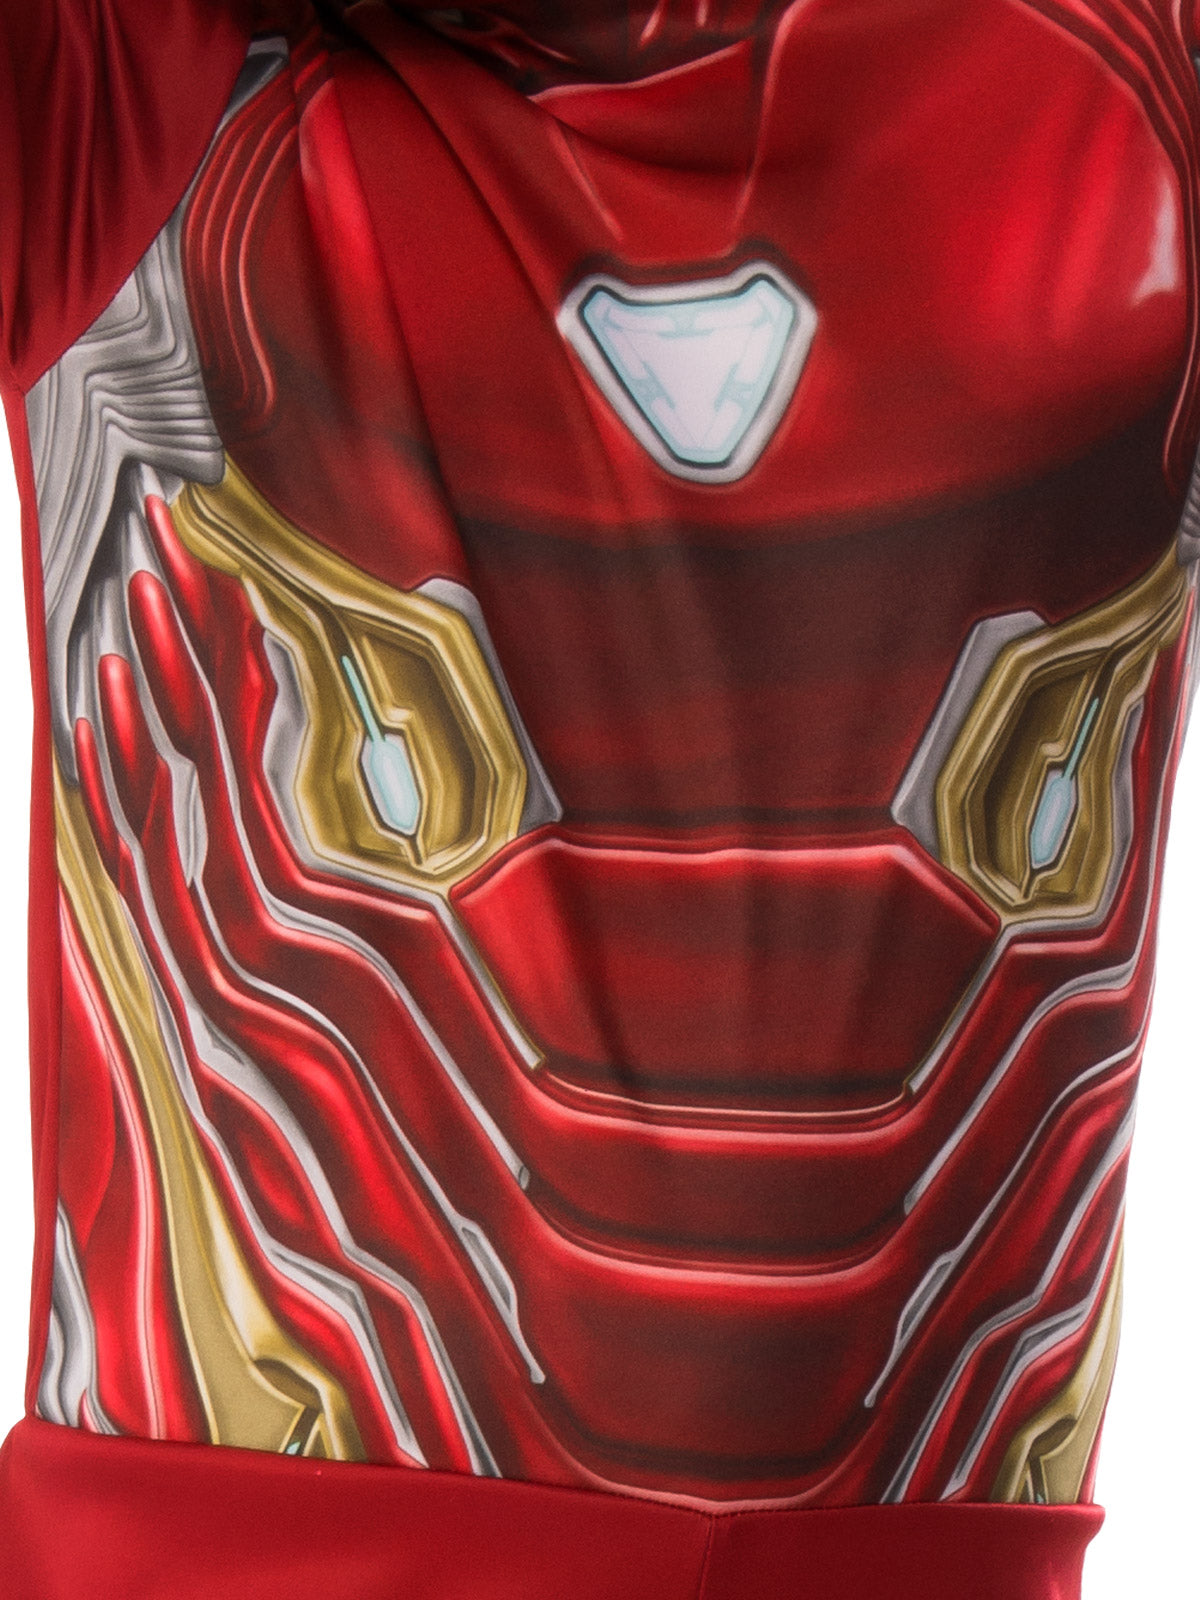  Rubie's Marvel Avengers: Endgame Child's Iron Man Mark 50  Costume & Mask, Large : Clothing, Shoes & Jewelry